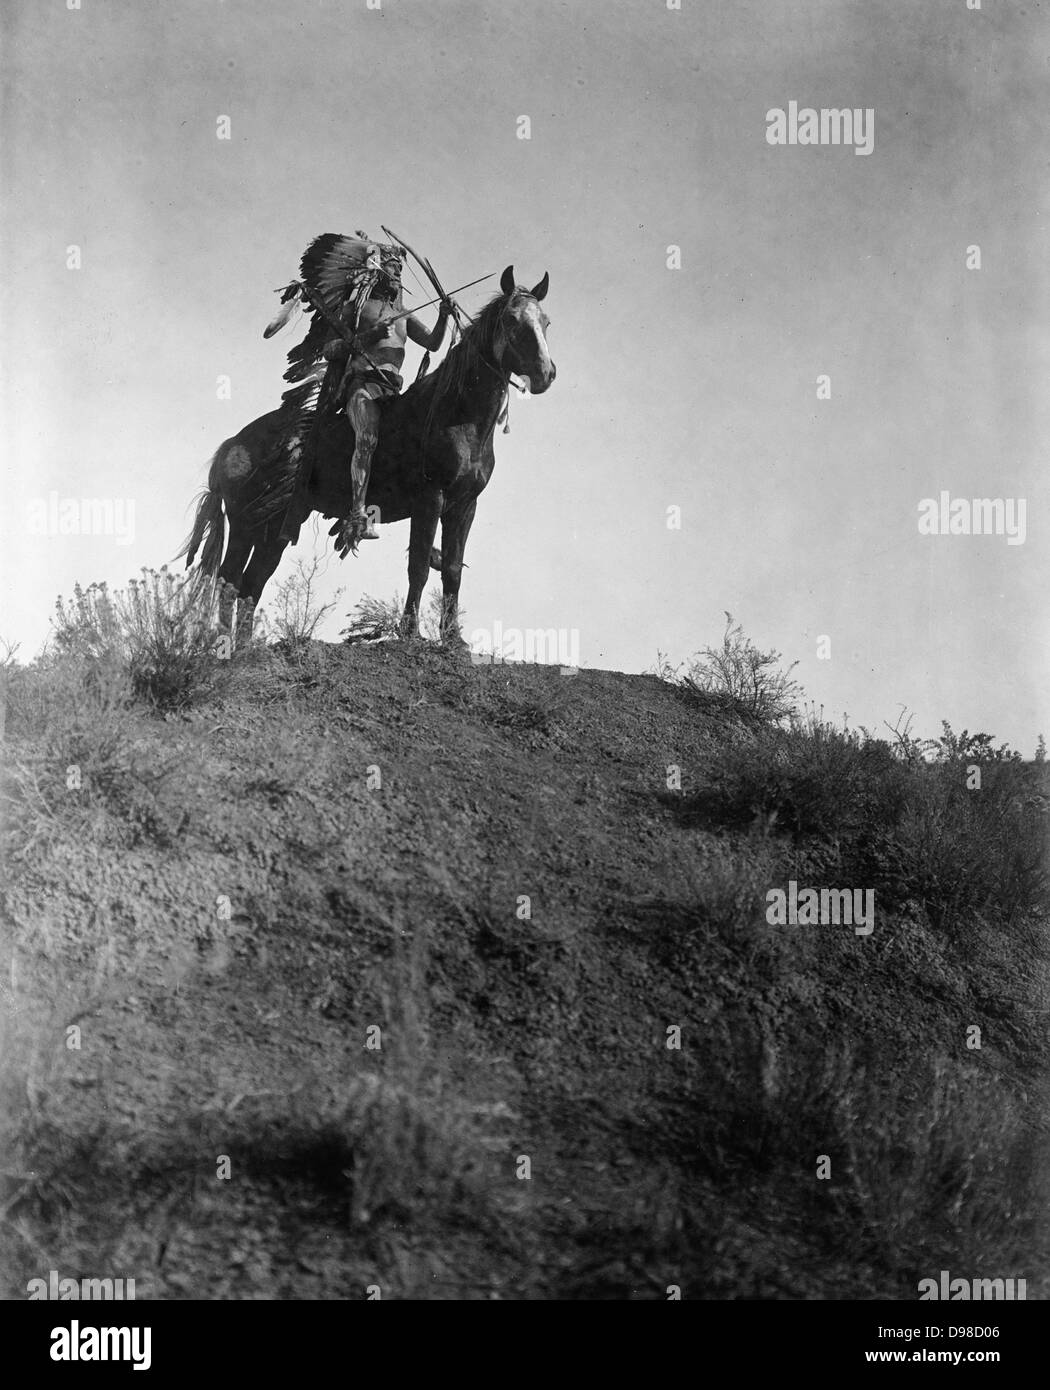 Native American Indian Mann in federkopfschmuck, zu Pferd, mit Bogen und Pfeilen, 1 Pfeil in seinem Mund, 1908. Foto von Edward Curtis (1868-1952). Stockfoto